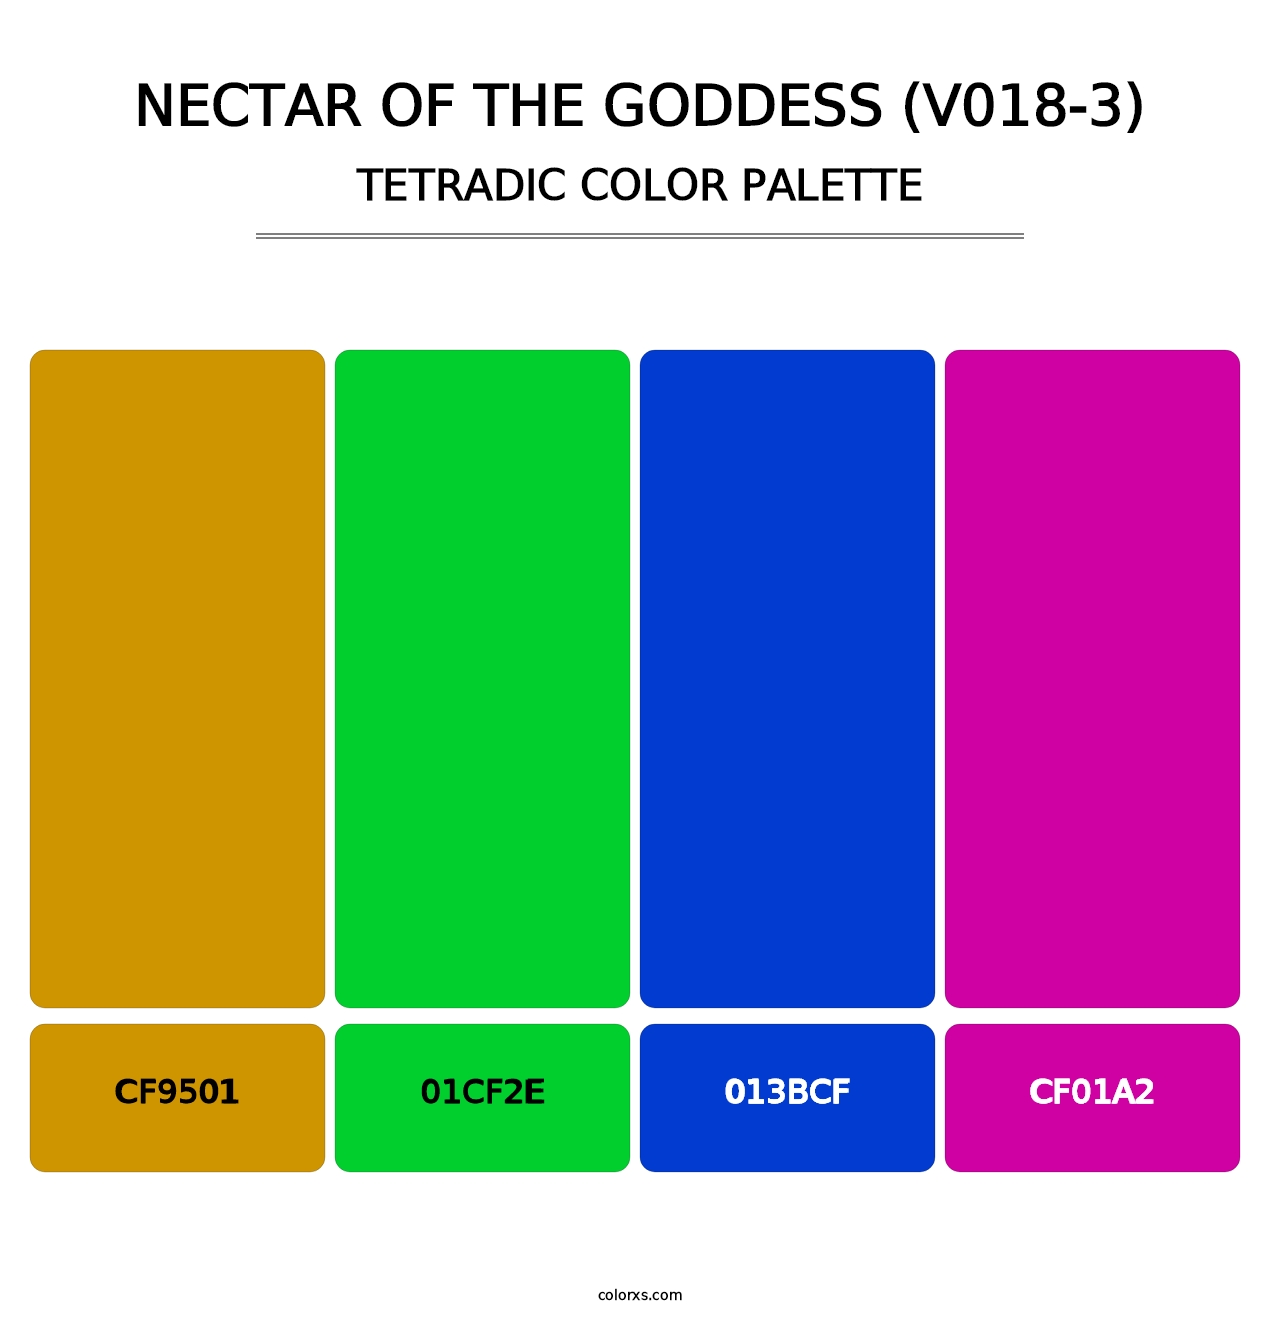 Nectar of the Goddess (V018-3) - Tetradic Color Palette